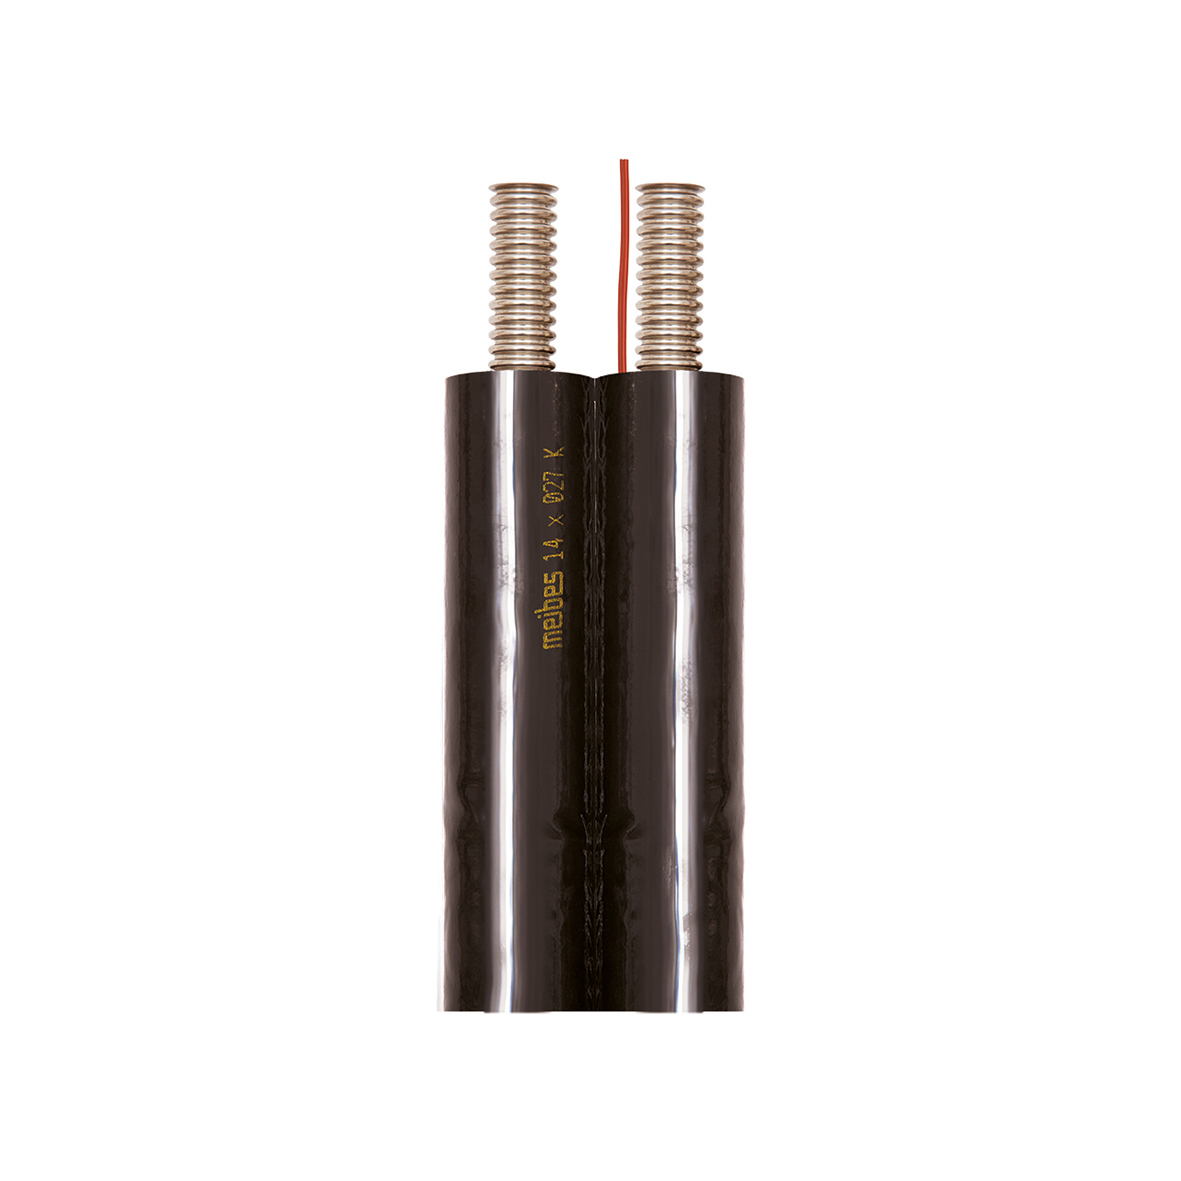 Inoflex roestvrijstalen ribbelbuis met kabel en beschermfolie